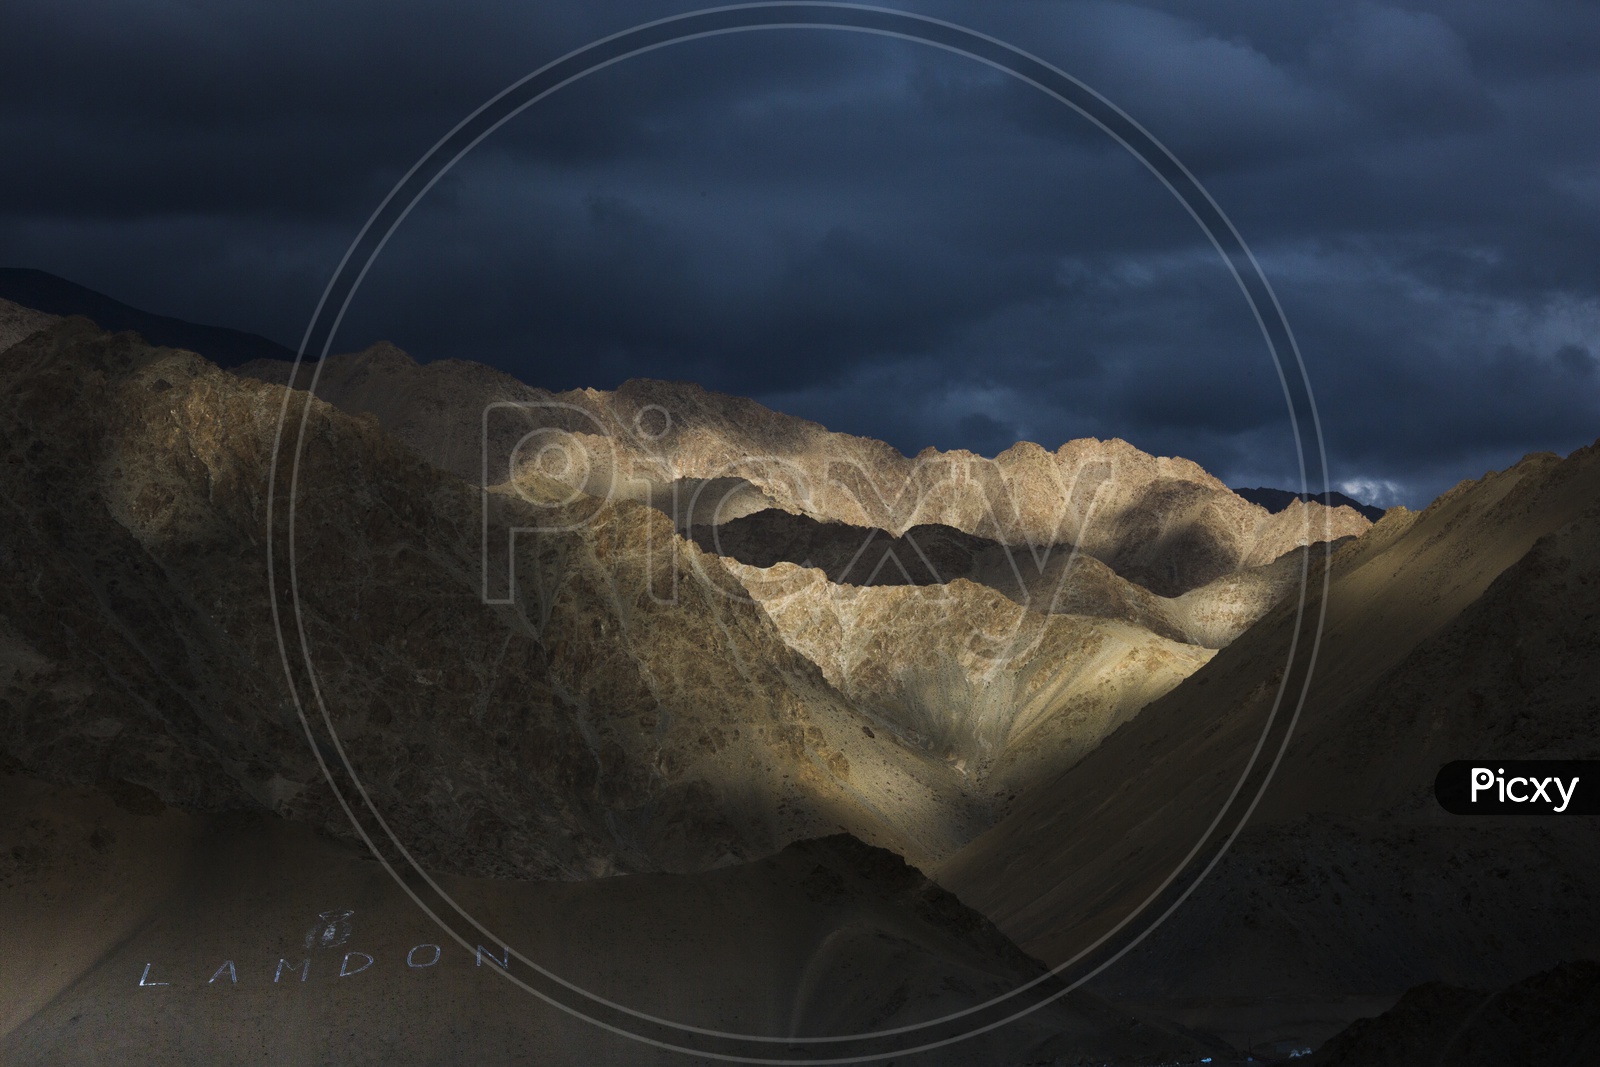 Terrains in Leh / Mountain Valleys in Leh / Valleys in Leh